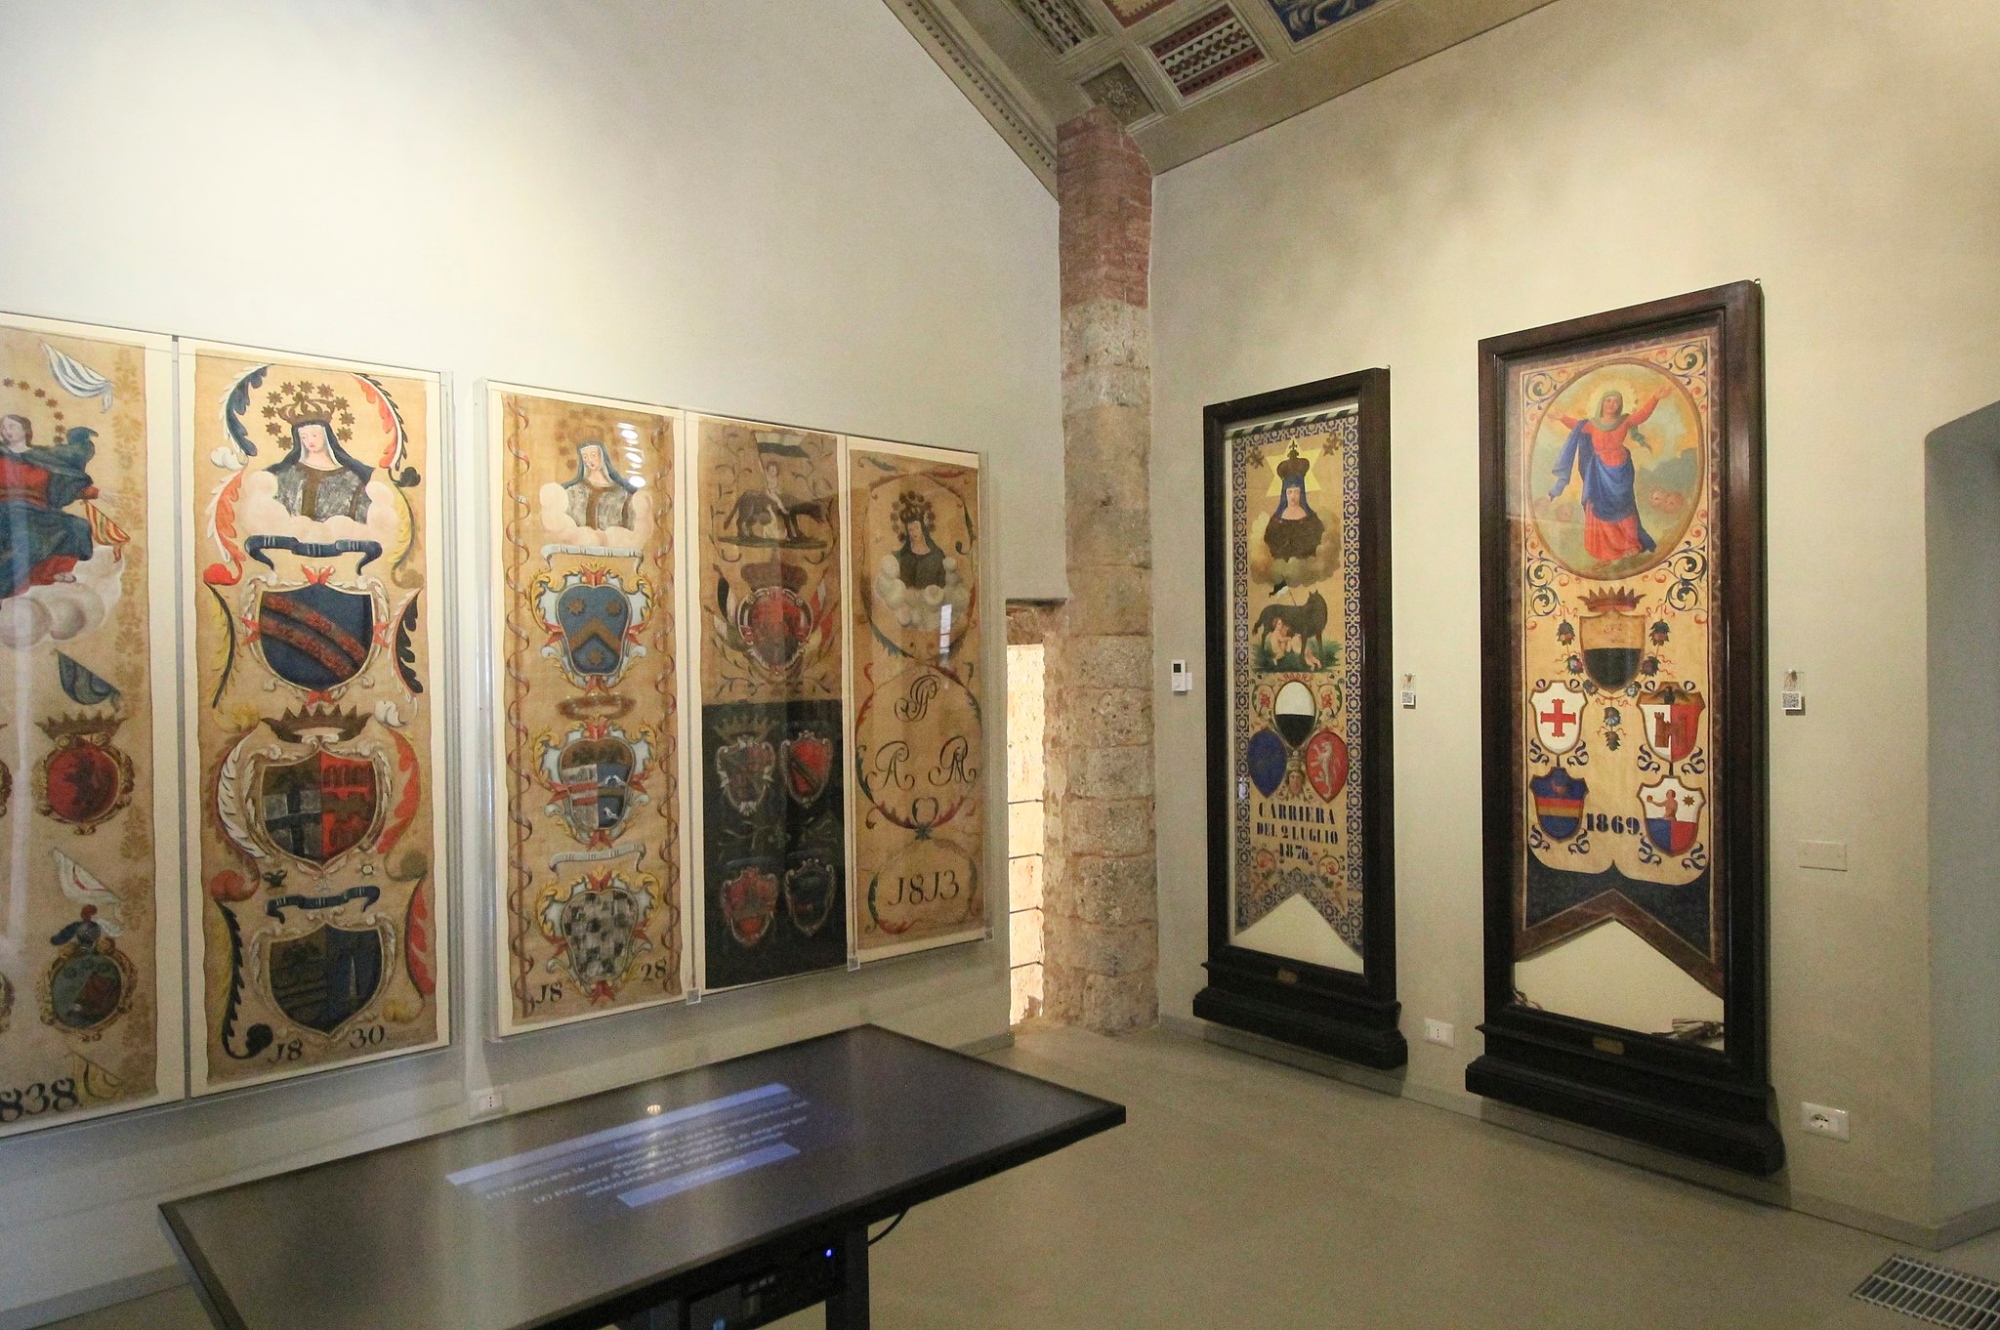 Museum of the Contrada della Civetta in Siena